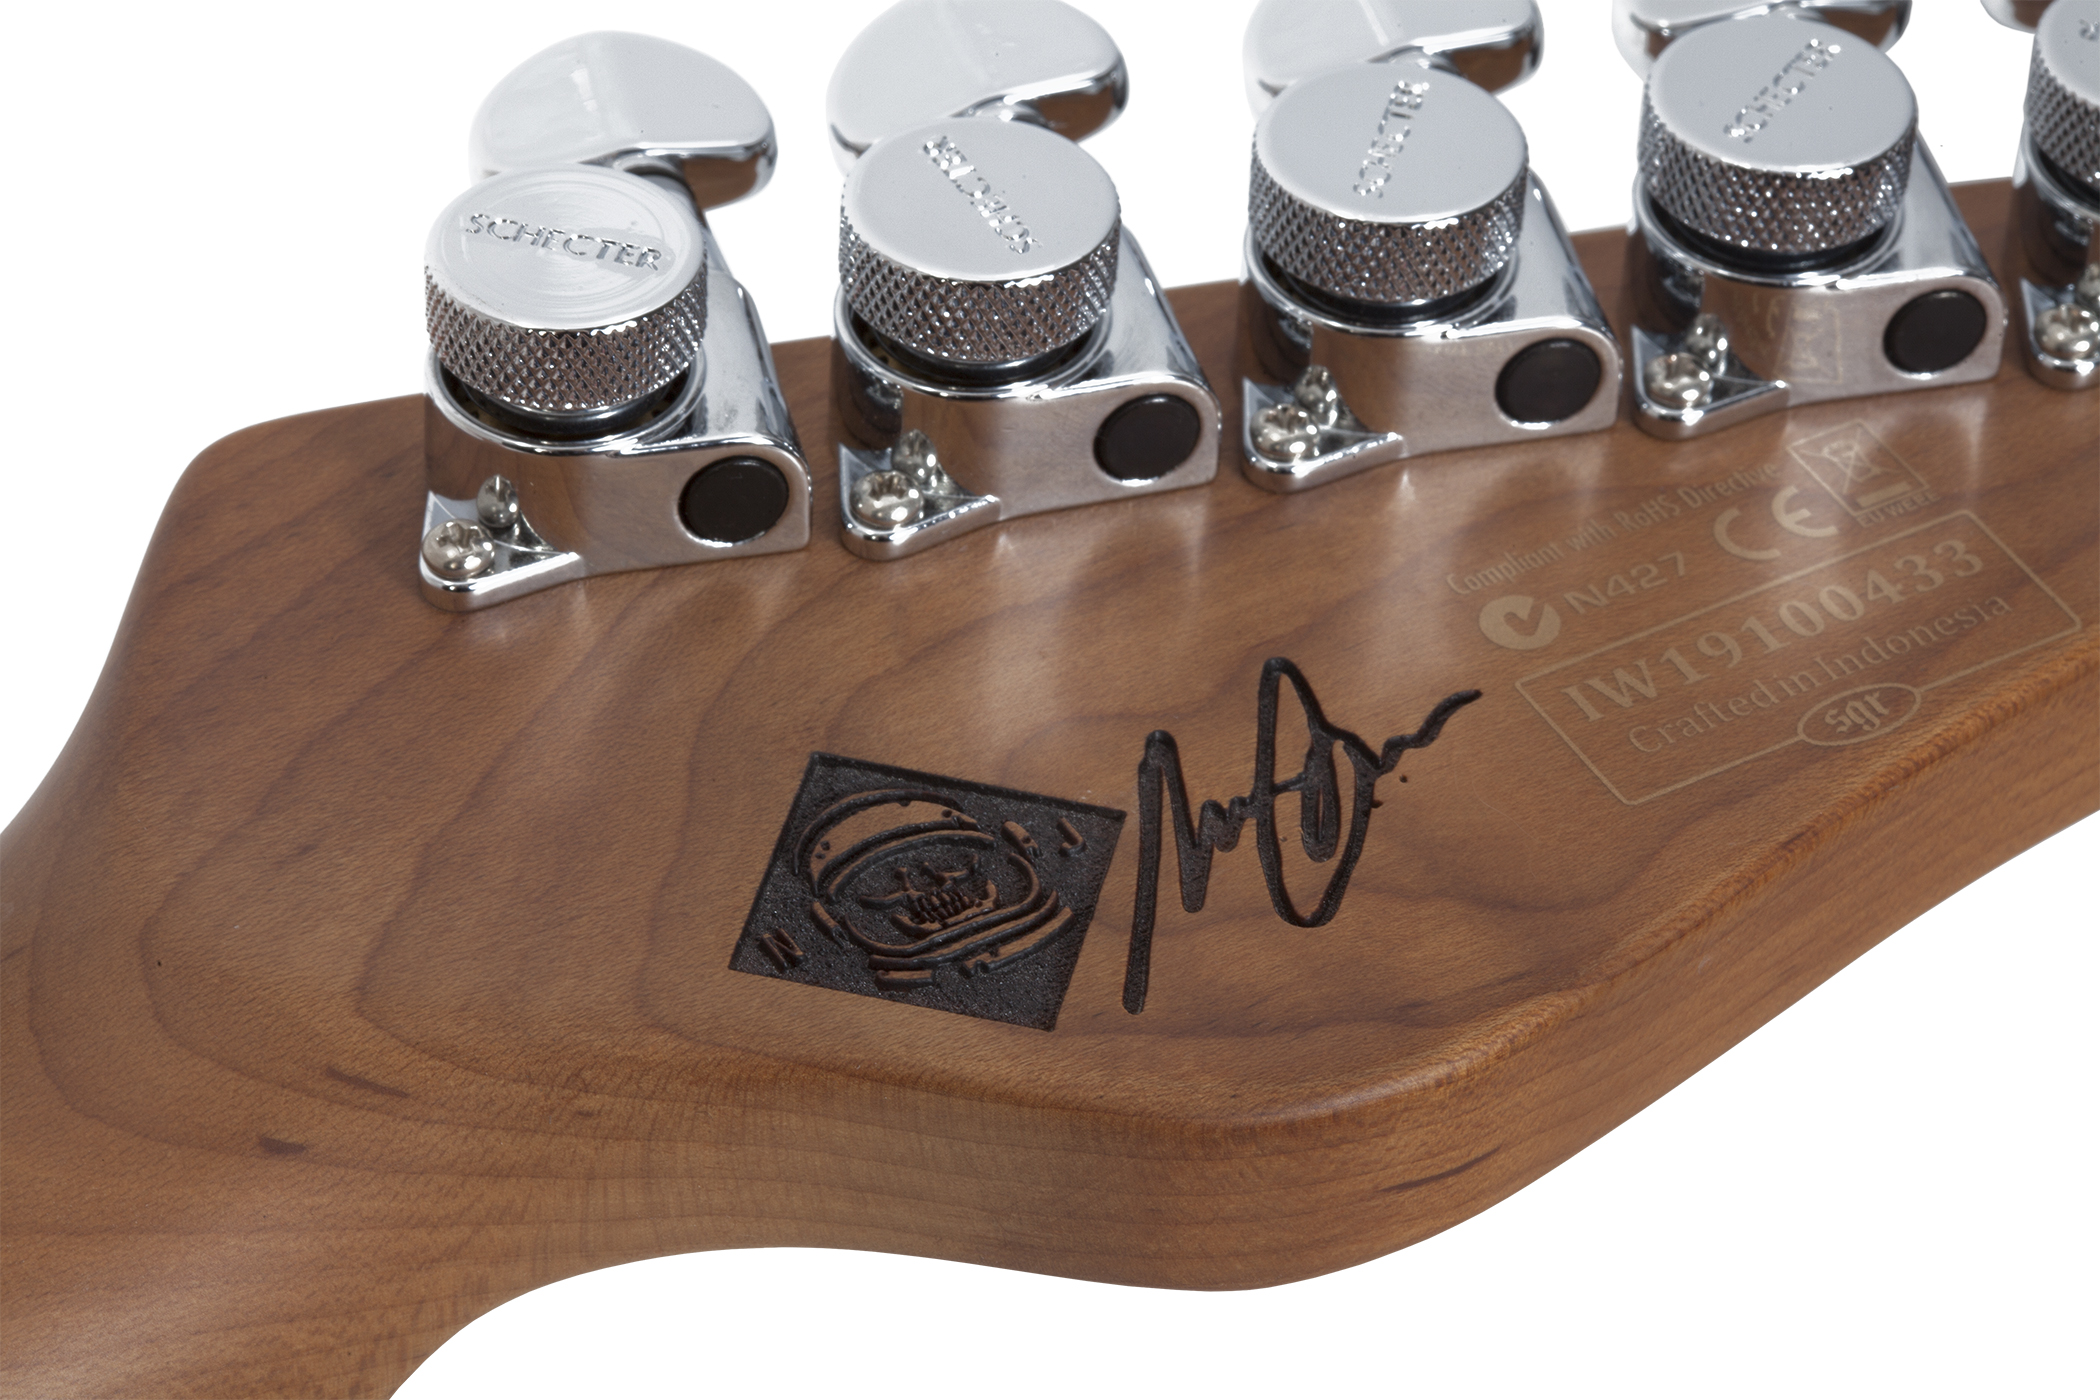 Schecter Nick Johnston Traditional Gaucher Signature 3s Trem Eb - Atomic Coral - Linkshandige elektrische gitaar - Variation 3